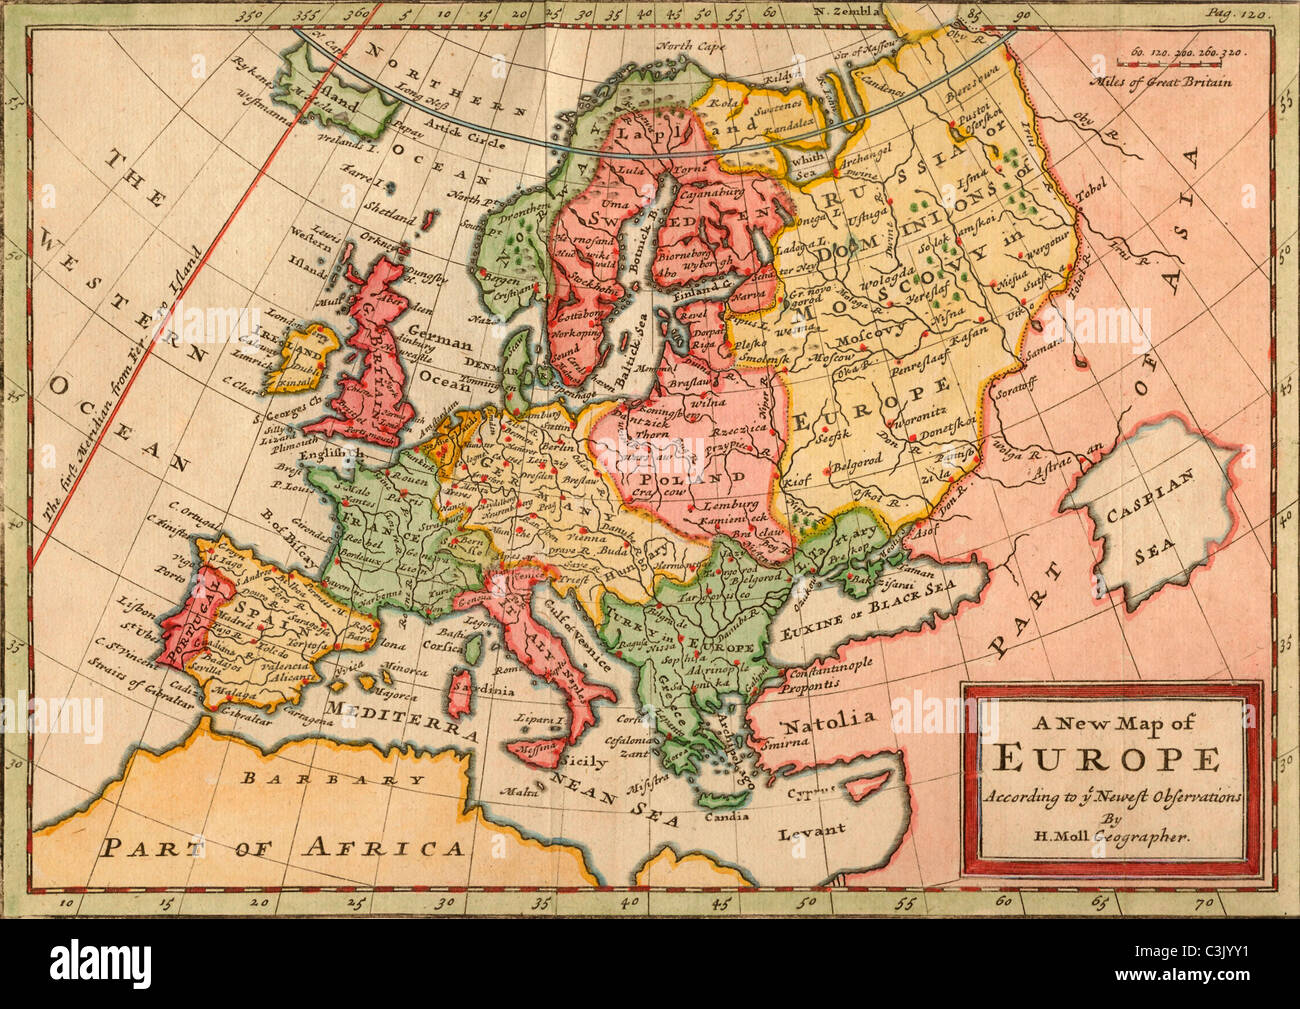 Una nuova mappa di Europa secondo le più recenti osservazioni da H. Moll geografo. Mappa europea datato circa 1720 da Herman Moll. Foto Stock